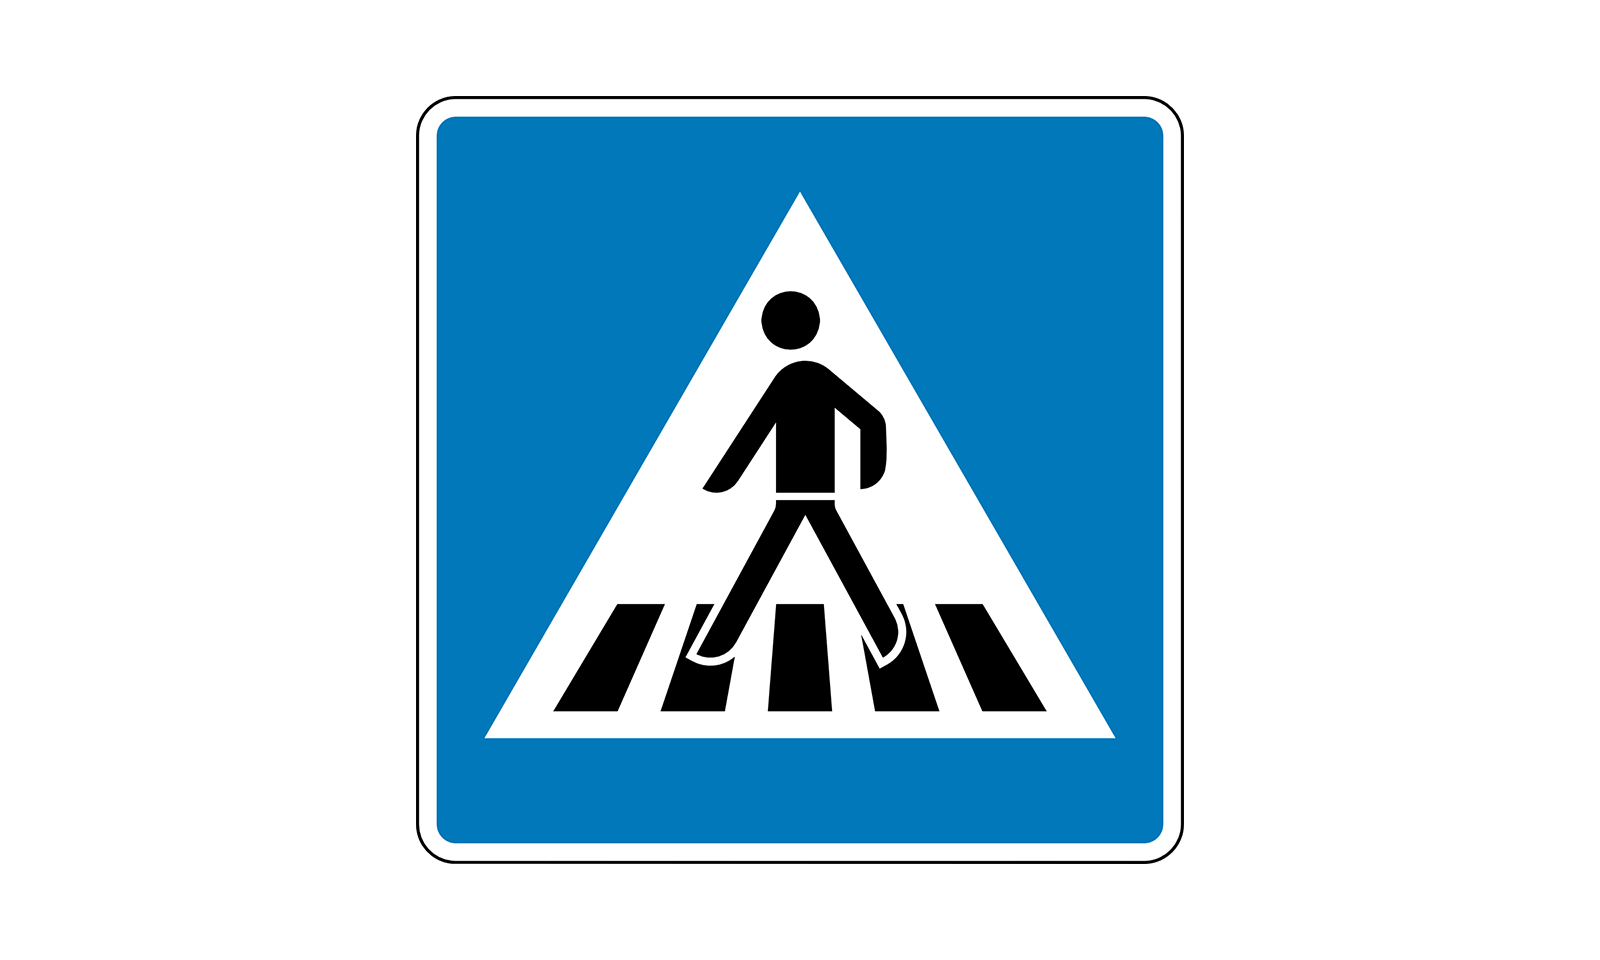 Знак пешеходный переход для детей на прозрачном фоне фото